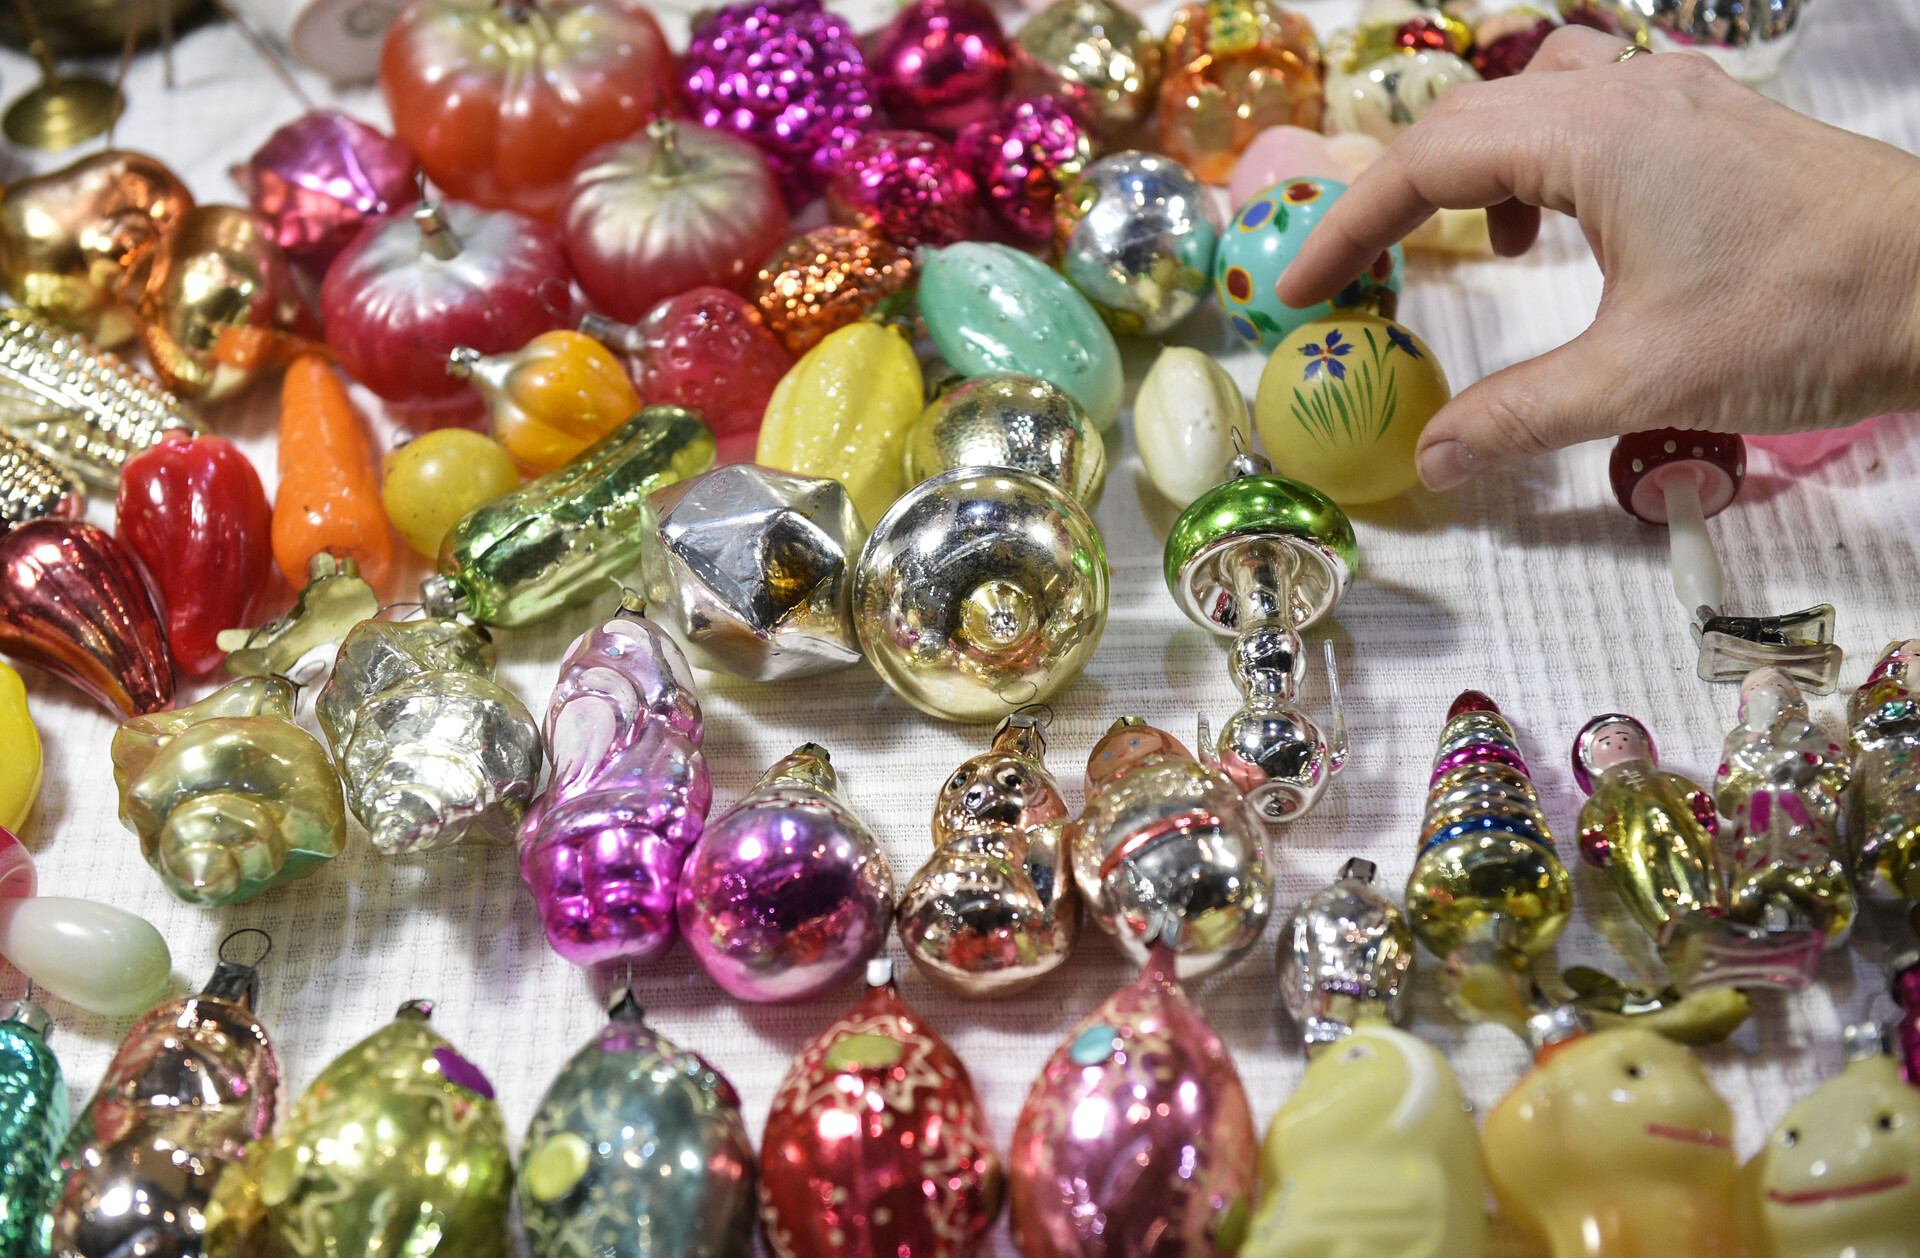 Сувениры ручной работы, угощения и гулянья: чем удивят гостей новогодние ярмарки в Подмосковье